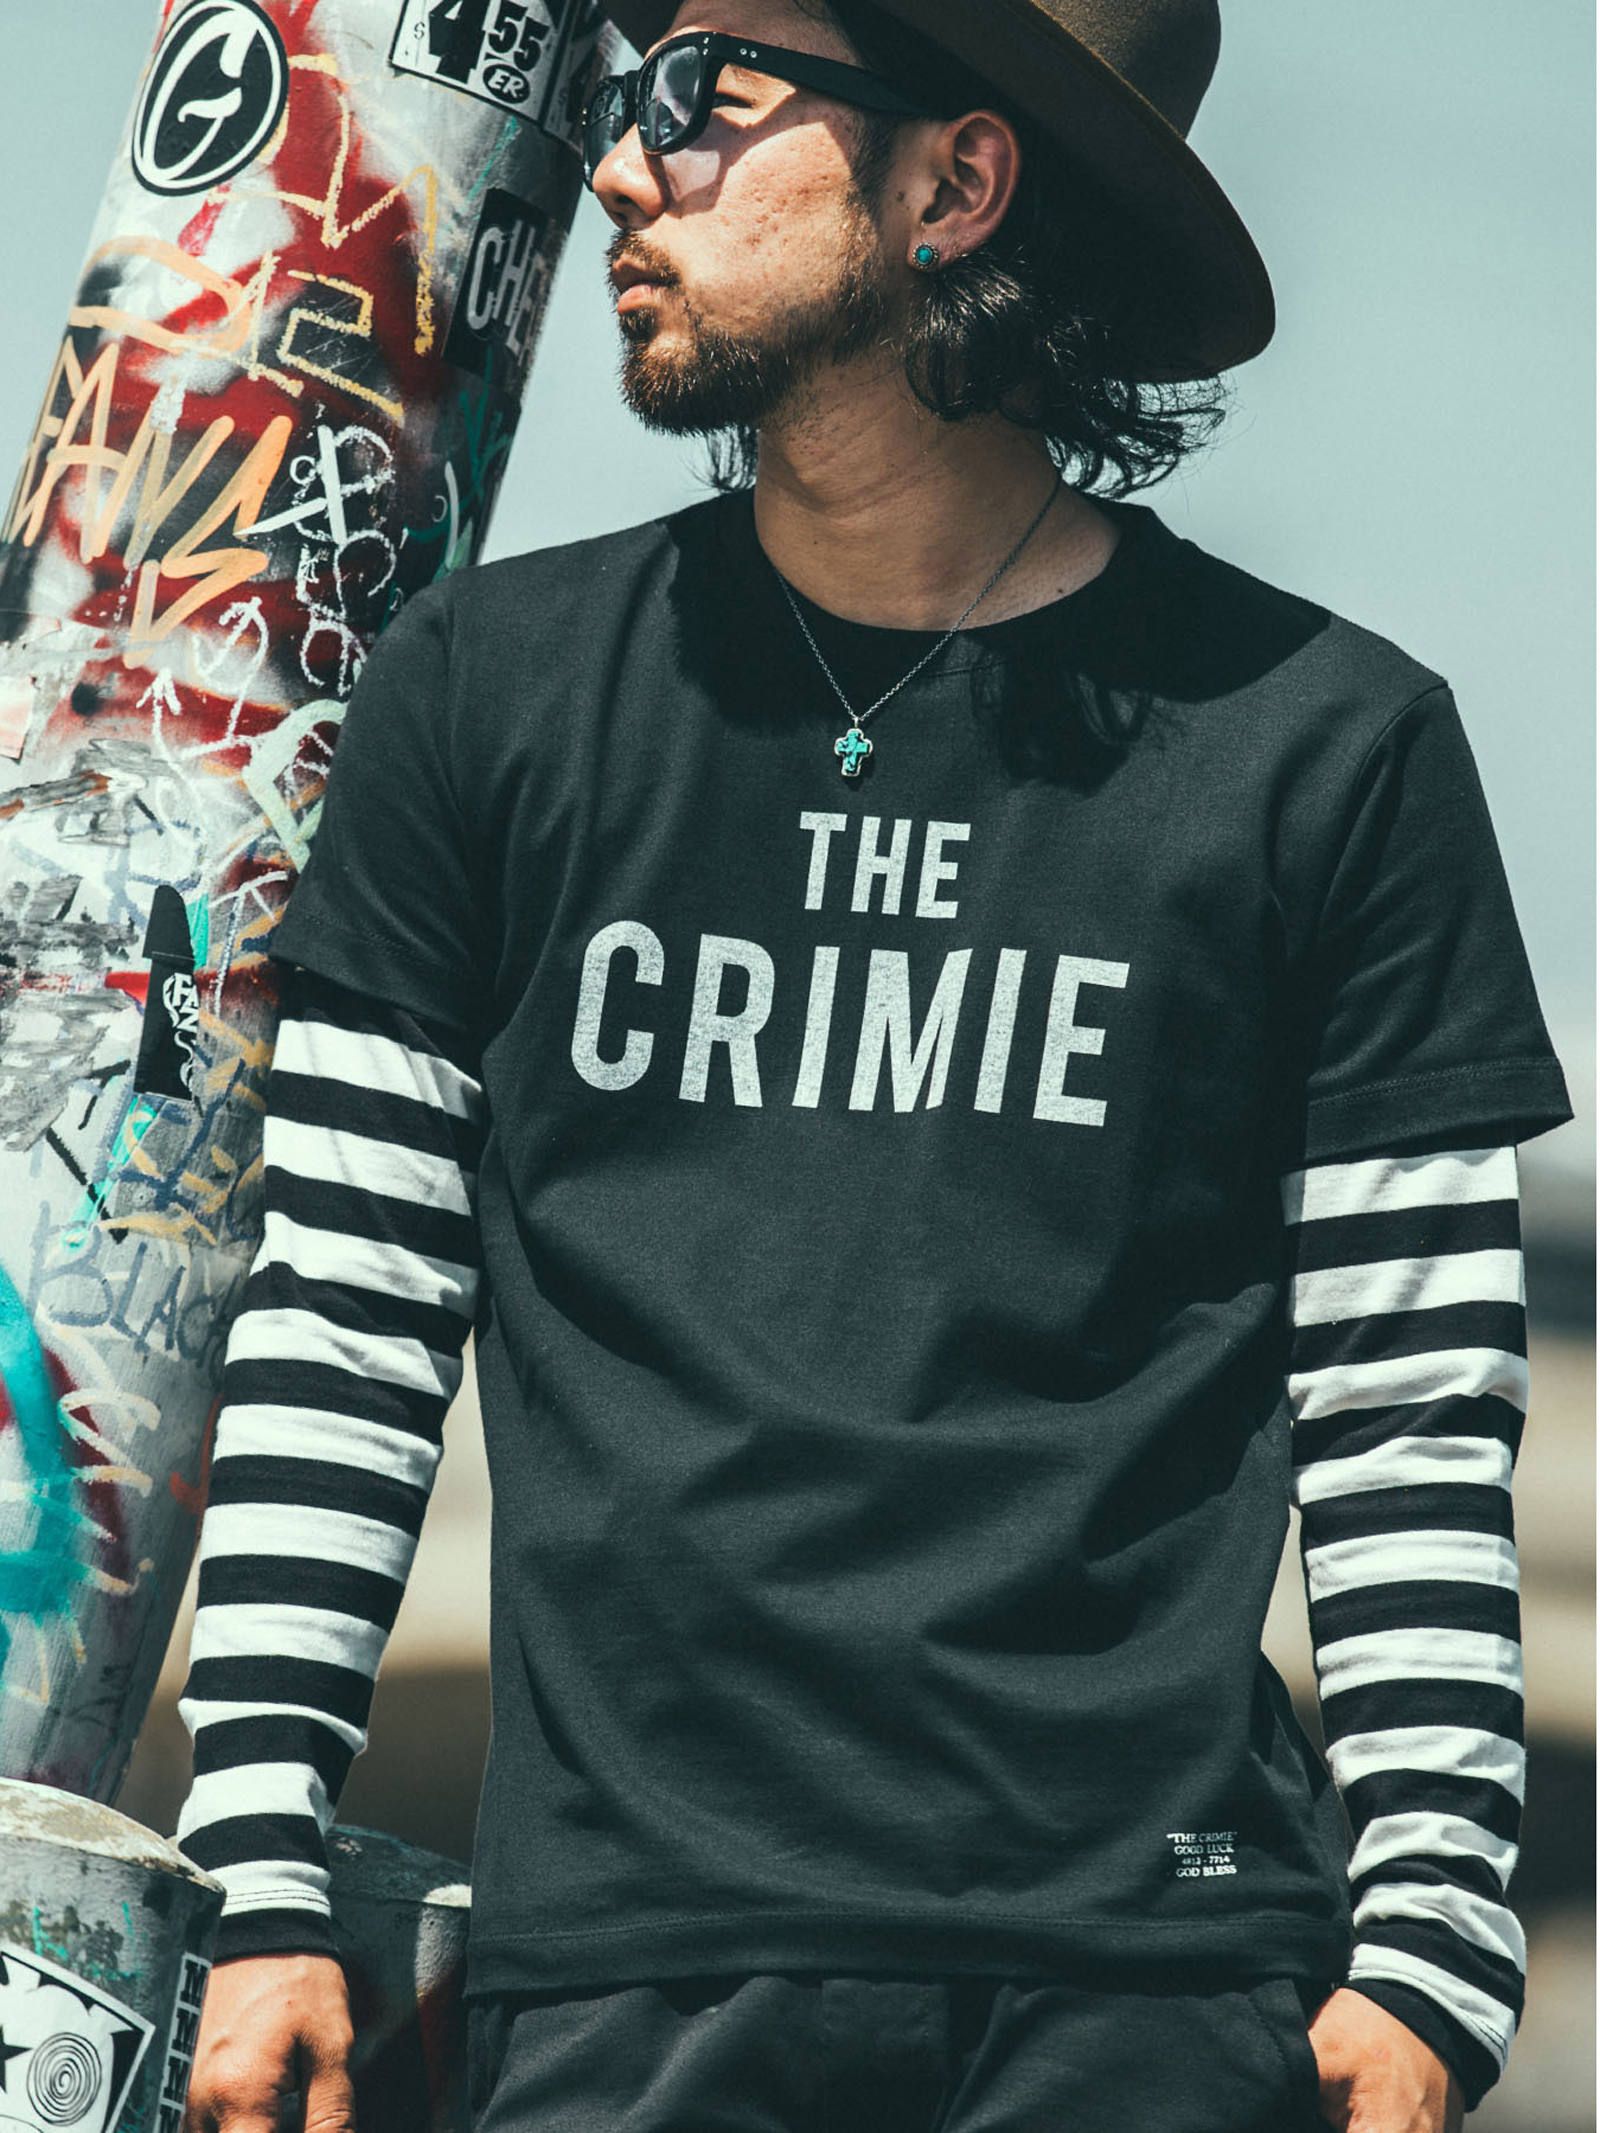 CRIMIE - 2PパックボーダーロングTシャツ (ブラック×ホワイト) / 2P ...